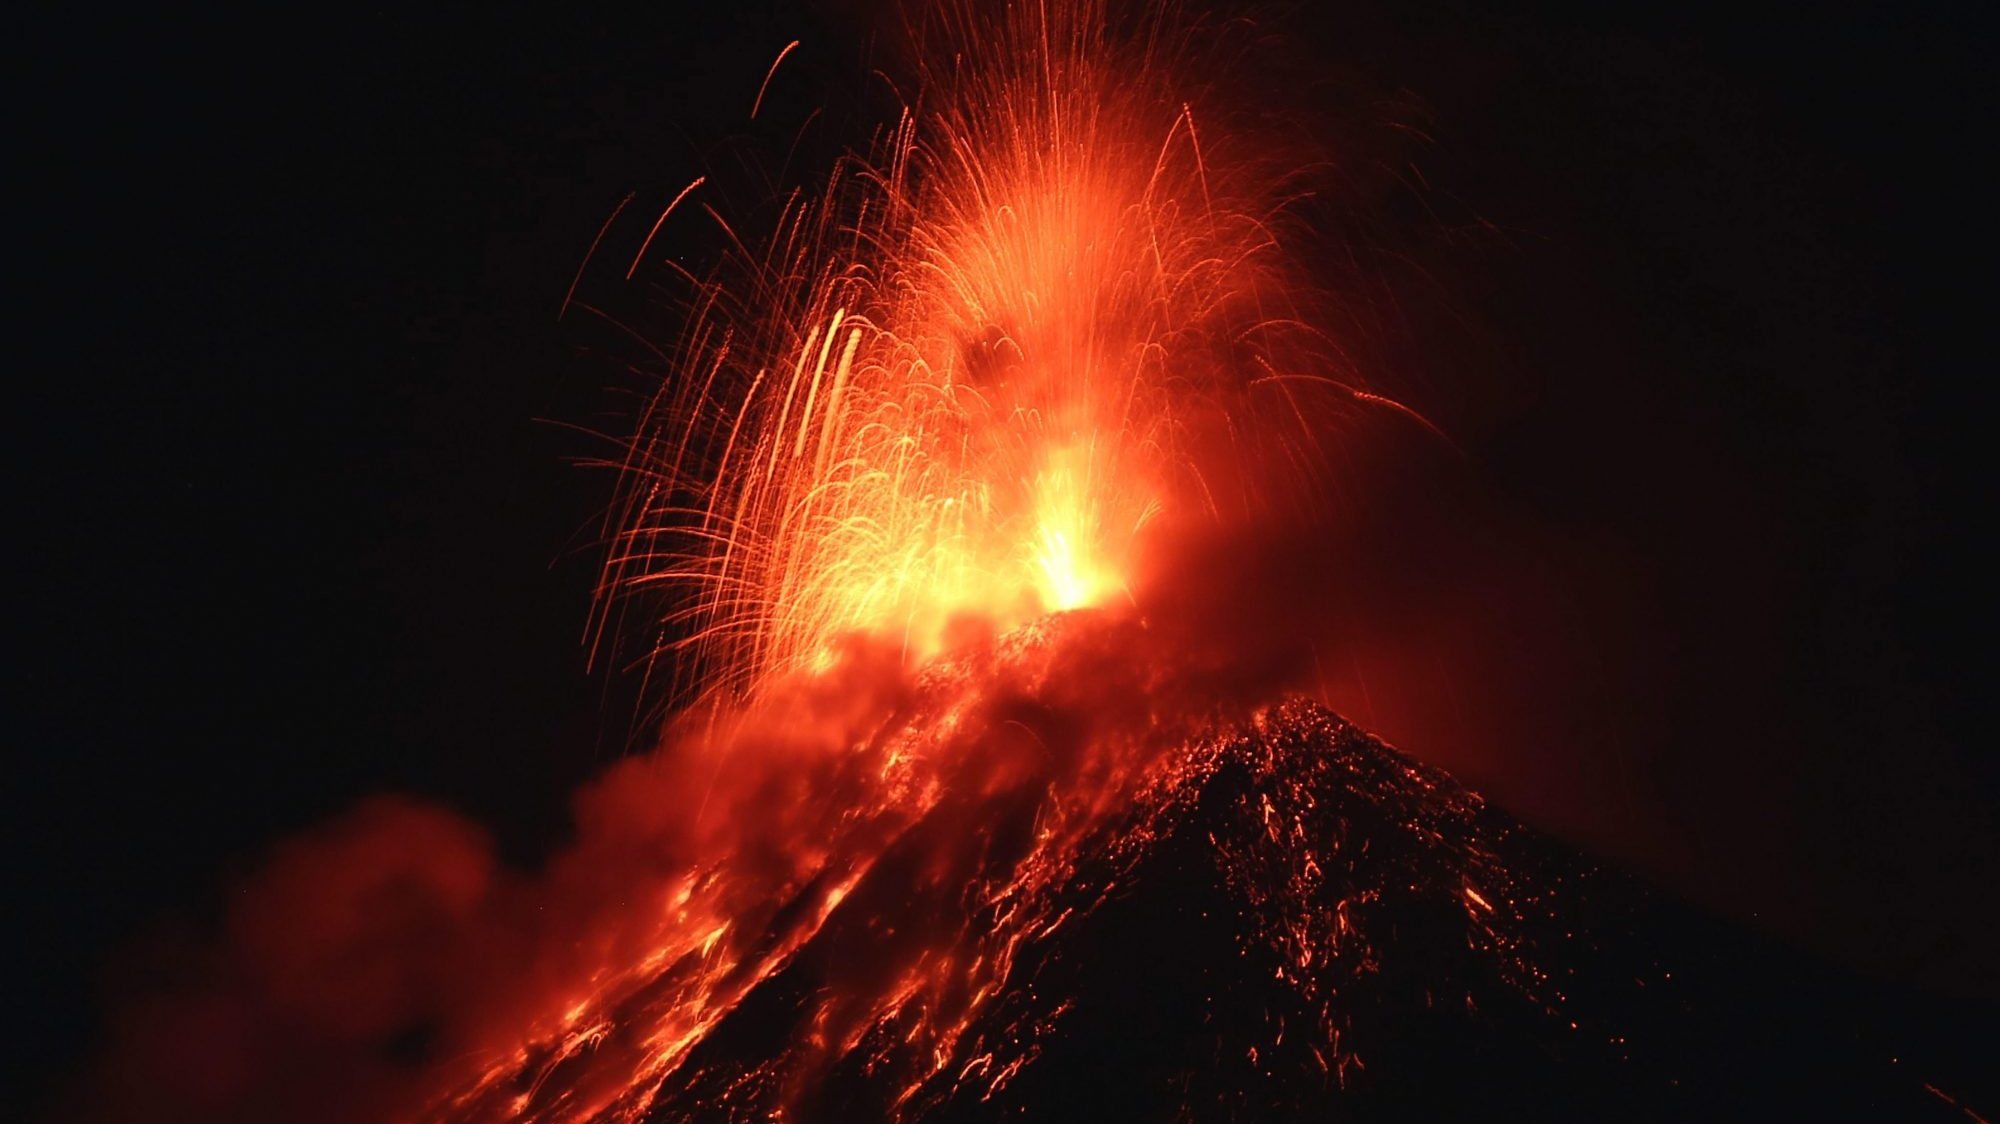 Cerca de 130 mil pessoas vivem sob a ameaça do Vulcão Fuego, um estratovulcão a 3.763 metros acima do nível do mar, localizado a apenas 35 quilómetros da cidade da Guatemala, capital do país